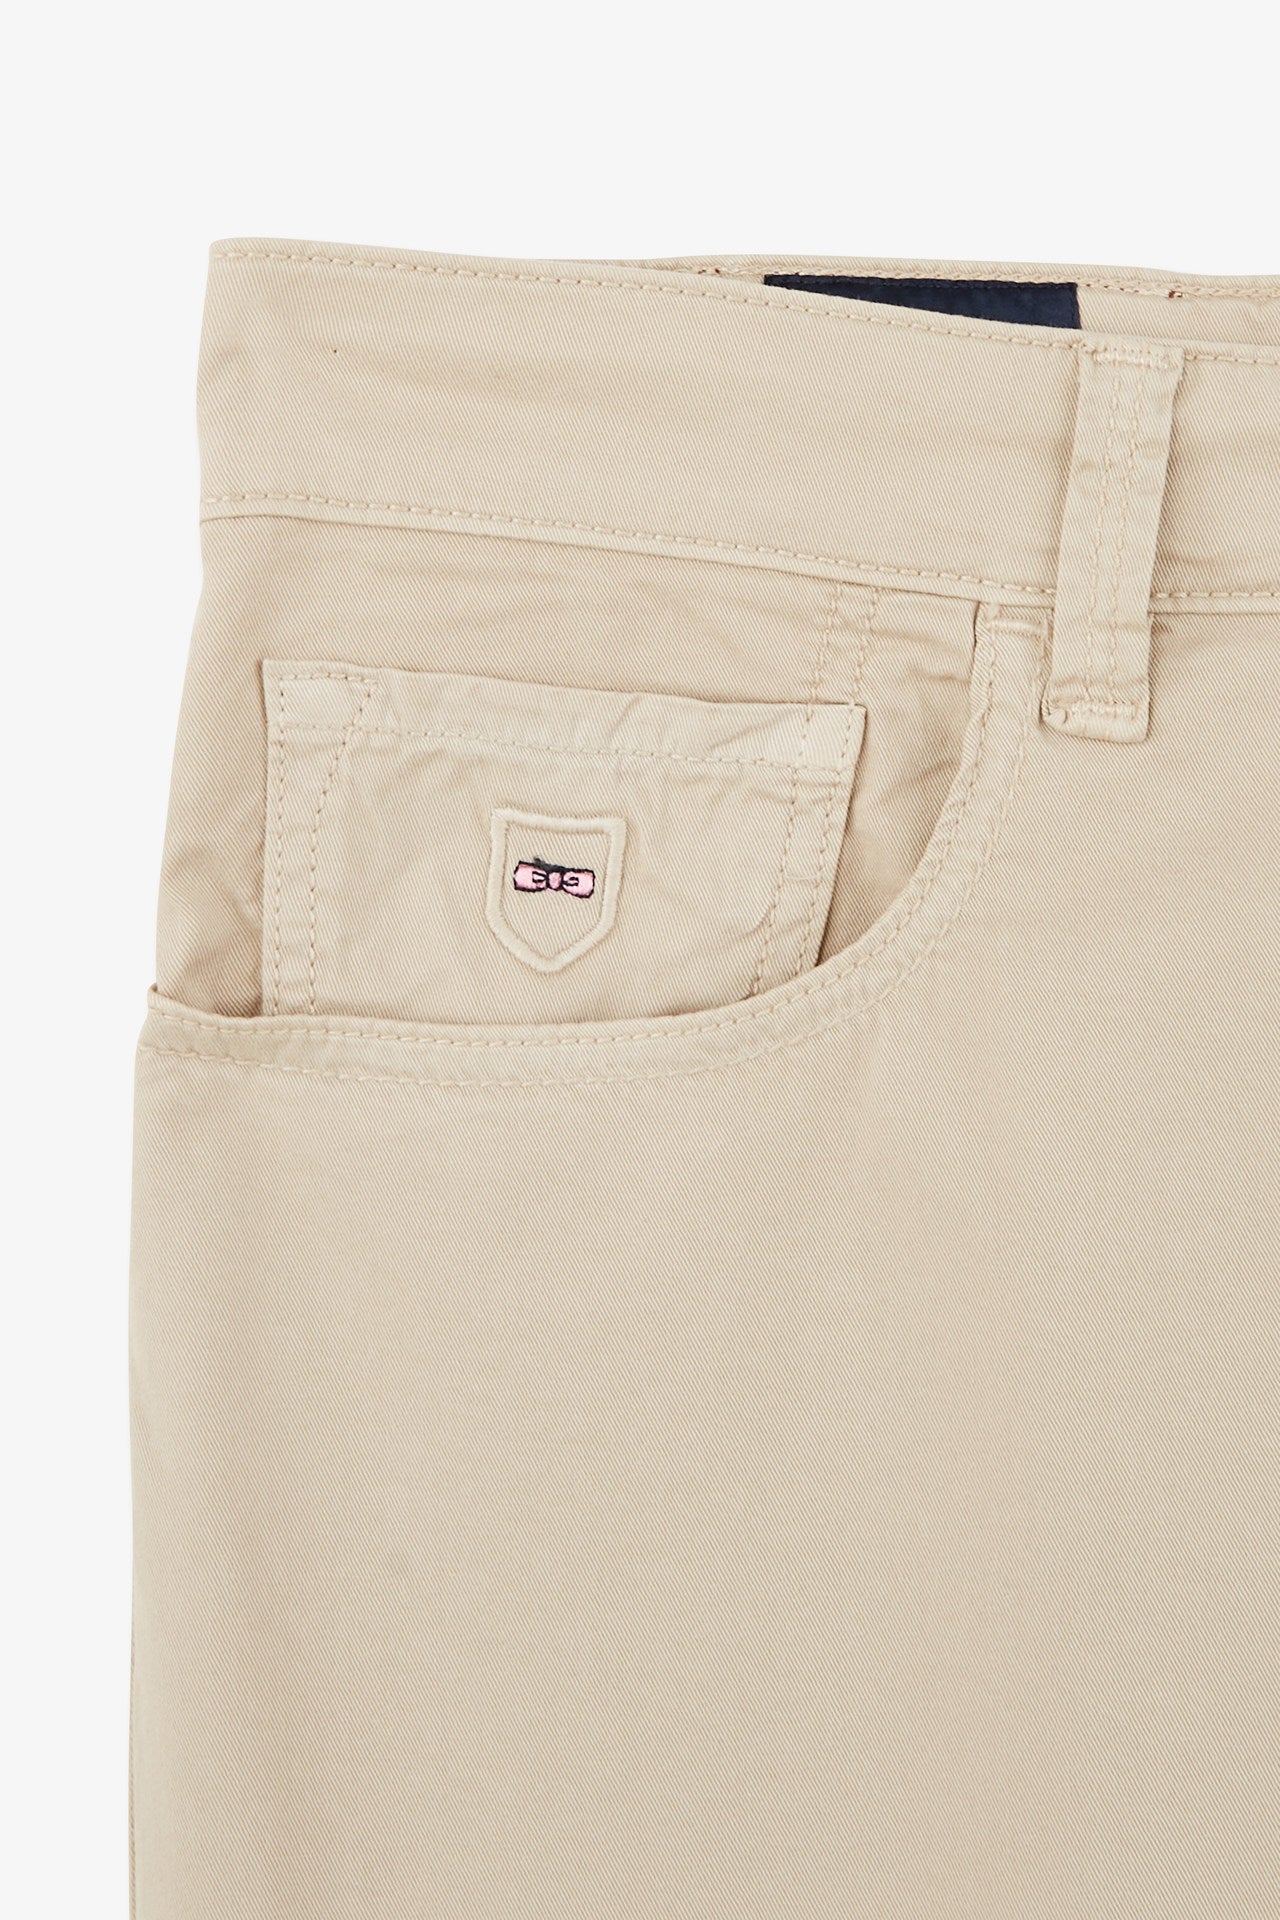 Pantalon beige droit 5 poches - Image 6